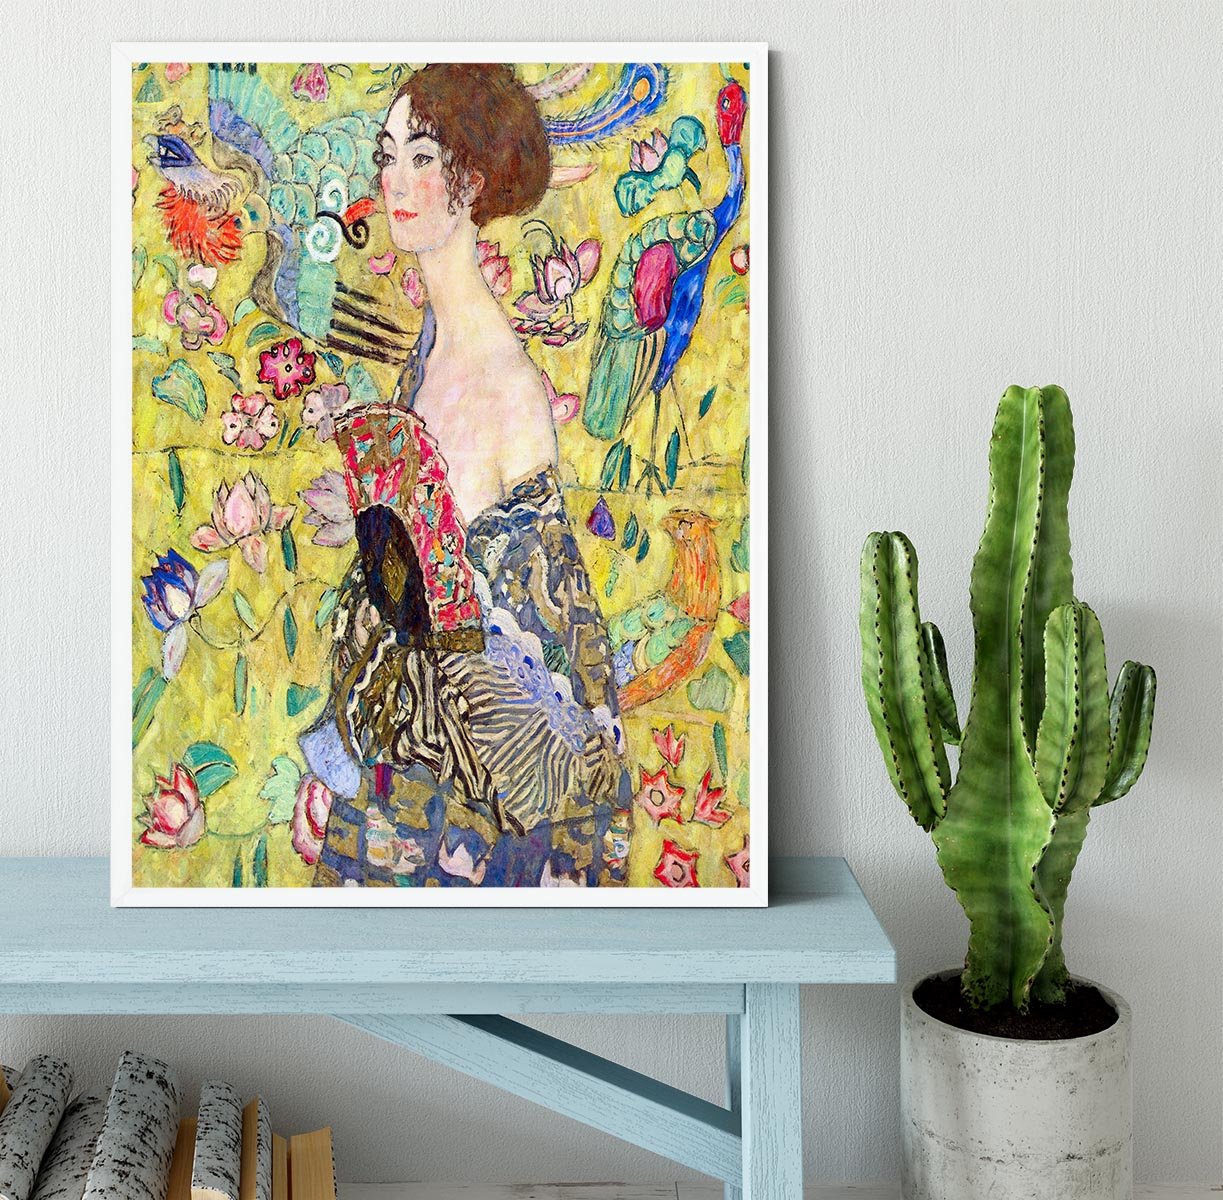 Lady with fan by Klimt Framed Print - Canvas Art Rocks -6